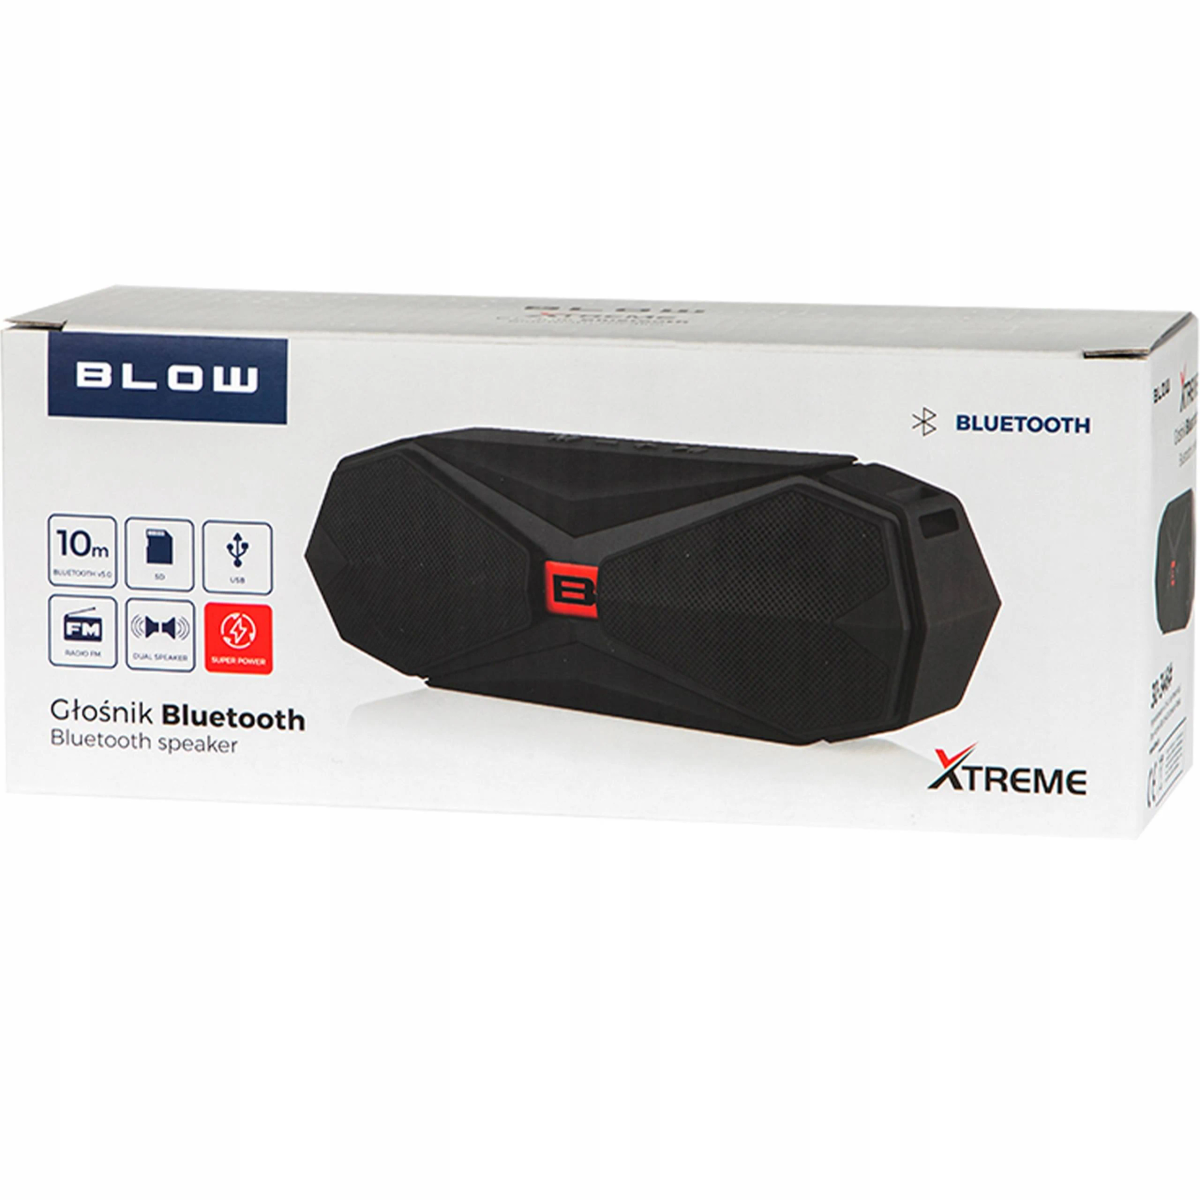 BLOW 5900804113683 Bluetooth Lautsprecher, Schwarz